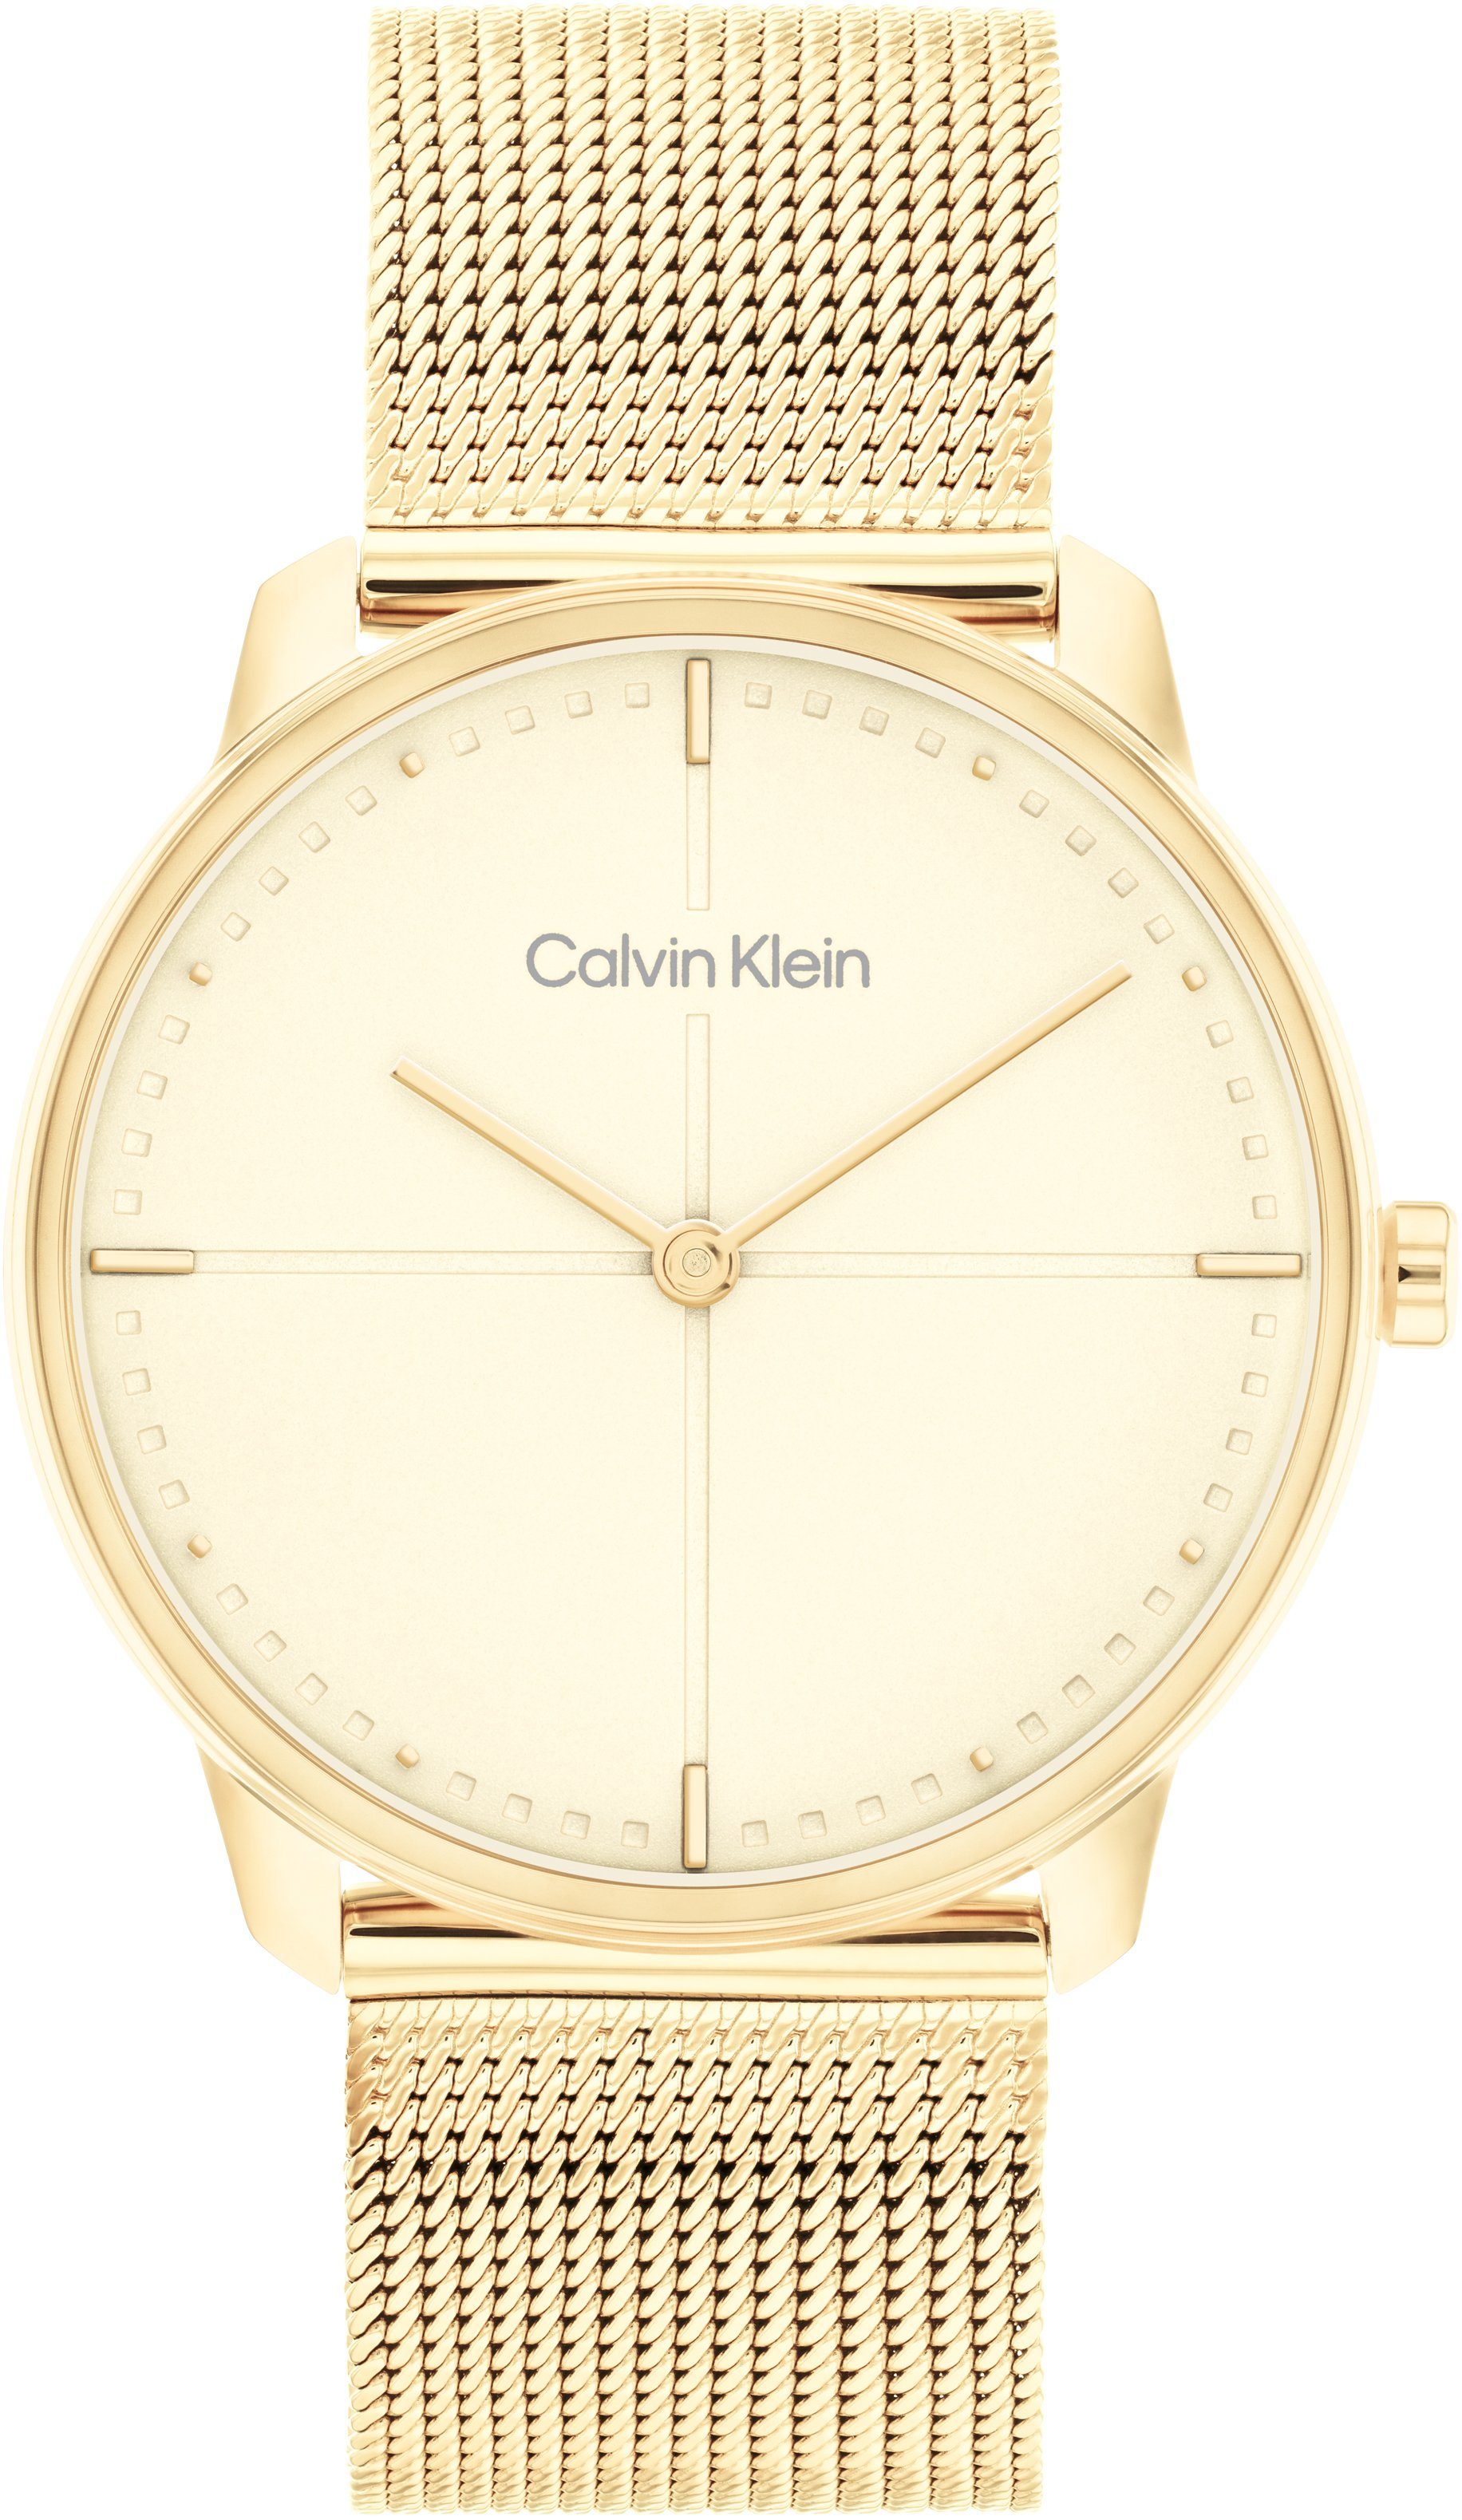 Calvin Klein Quarzuhr ICONIC 35 mm, 25200159, Armbanduhr, Damenuhr, Mineralglas, IP-Beschichtung